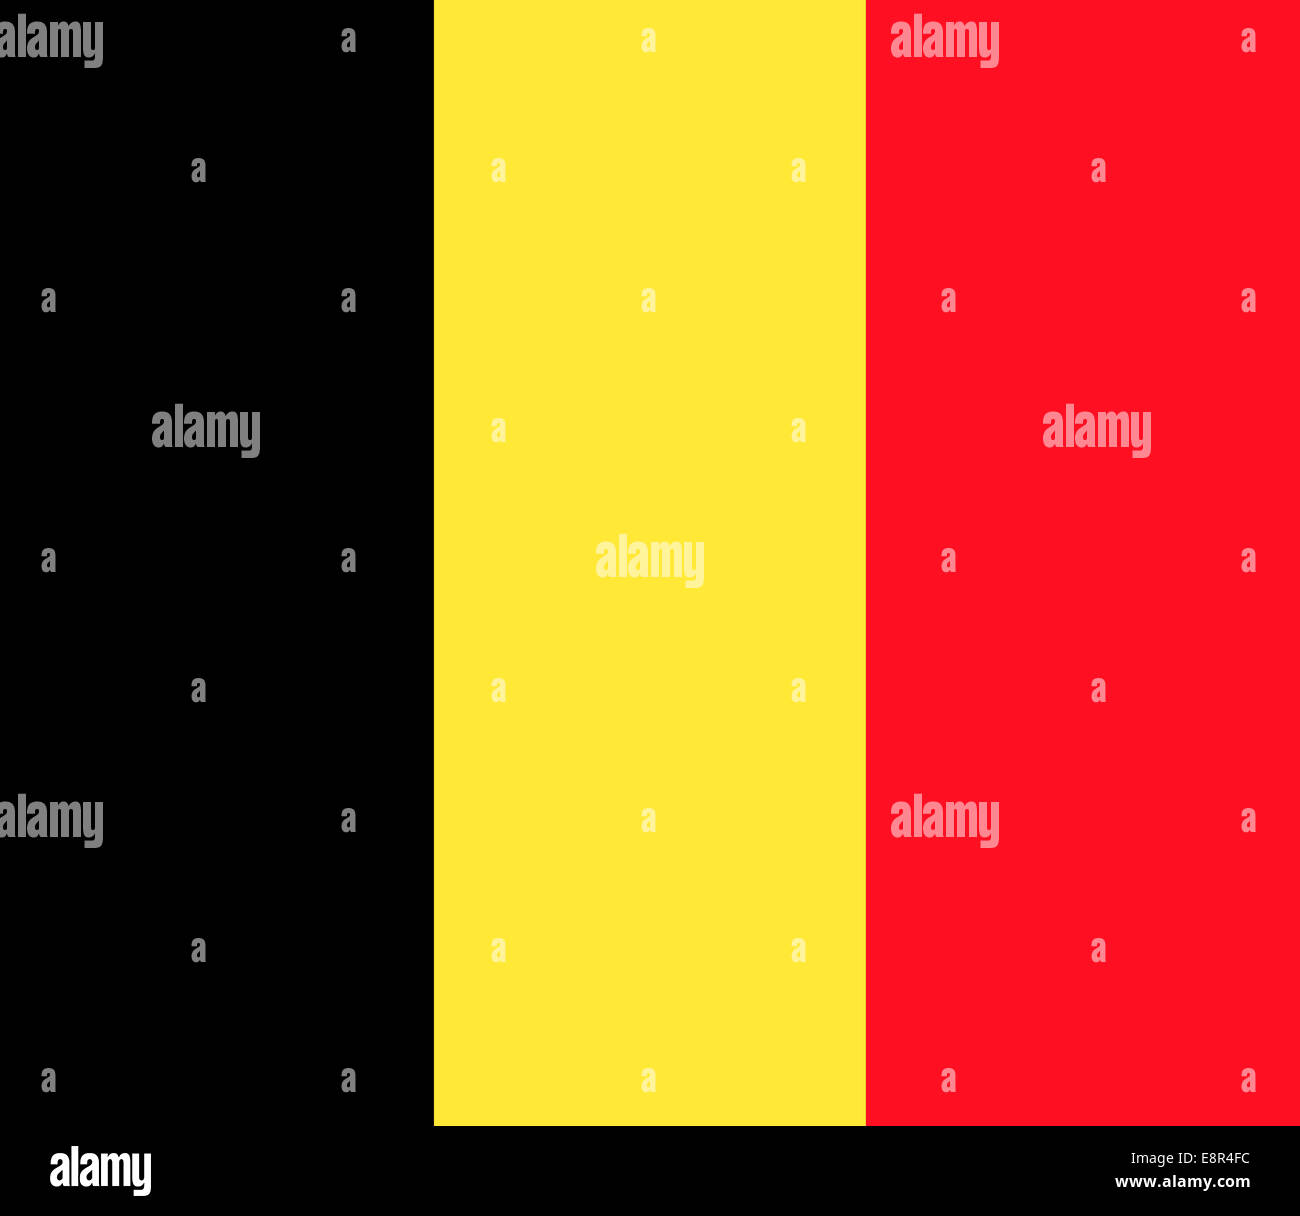 Flagge Belgiens - Standardverhältnis der Flagge Belgiens - True RGB-Farbmodus Stockfoto